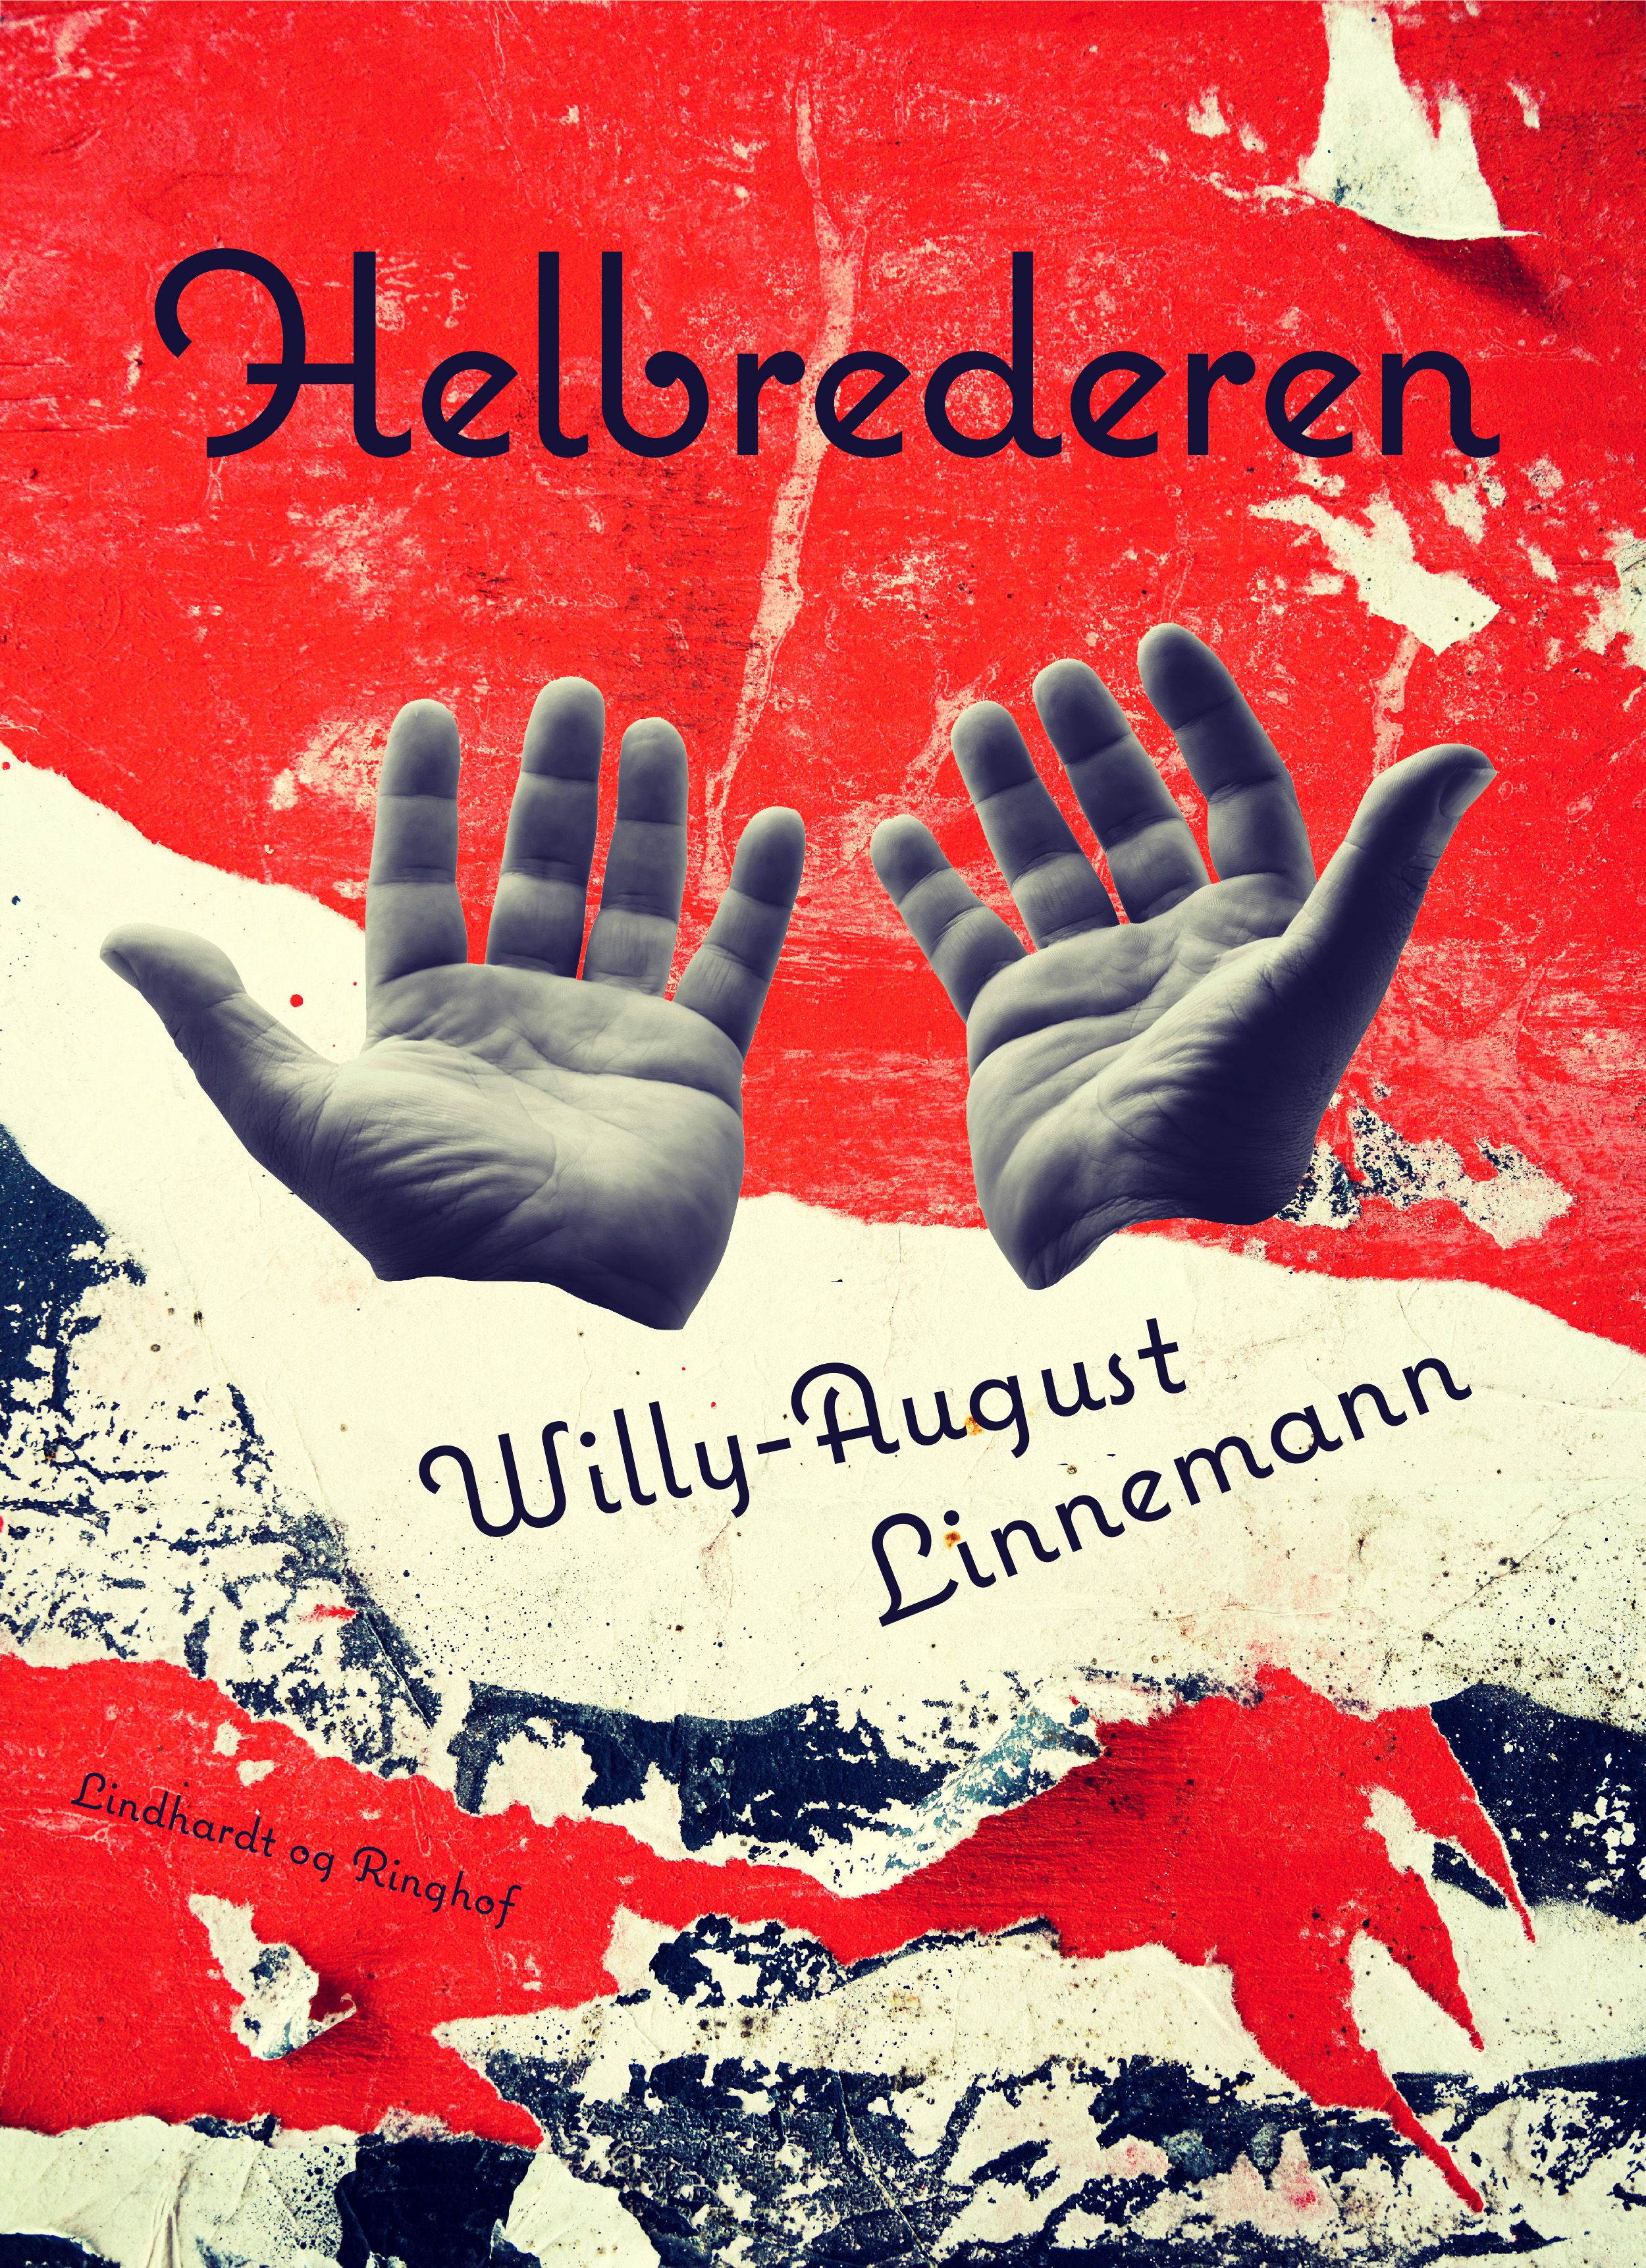 Helbrederen, e-bog af Willy-August Linnemann